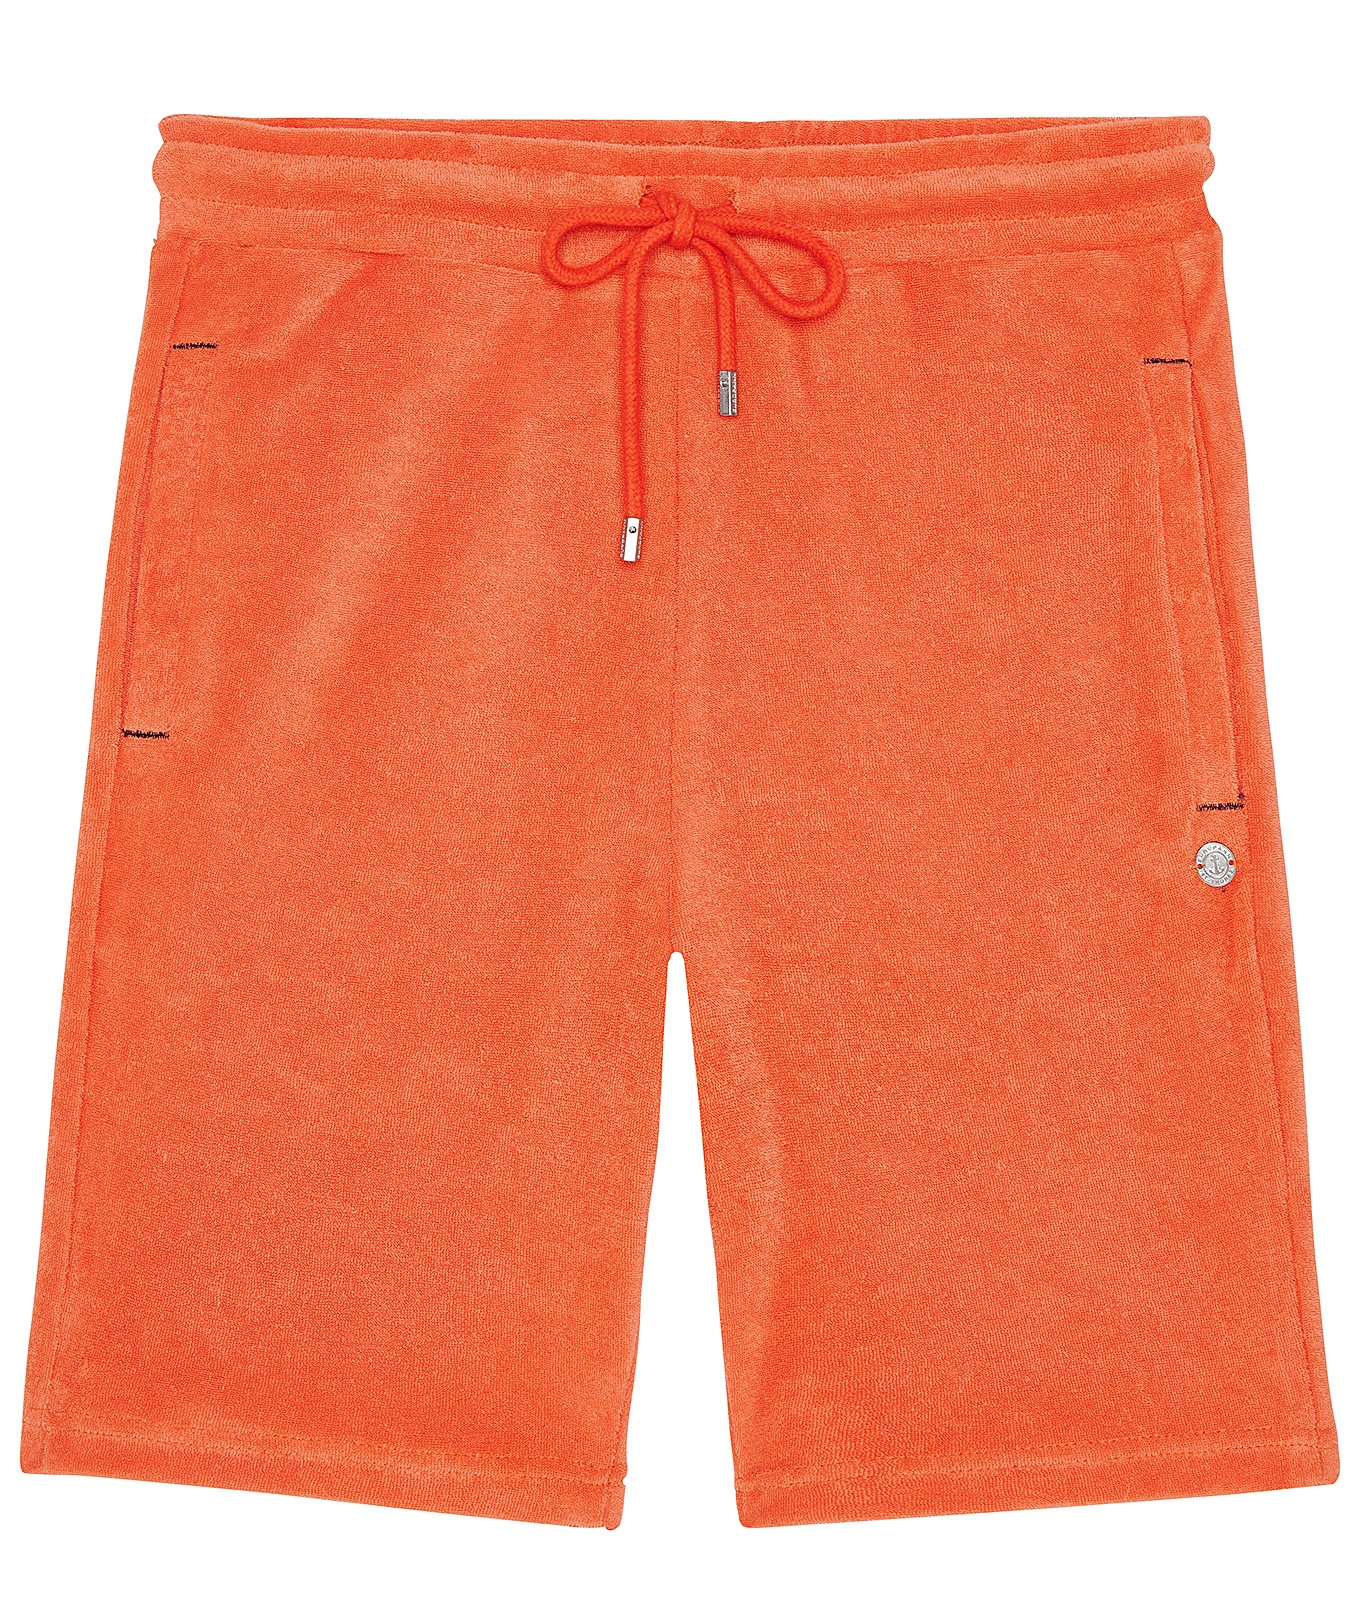 orange sponge Jogging short | Quality brand Europann